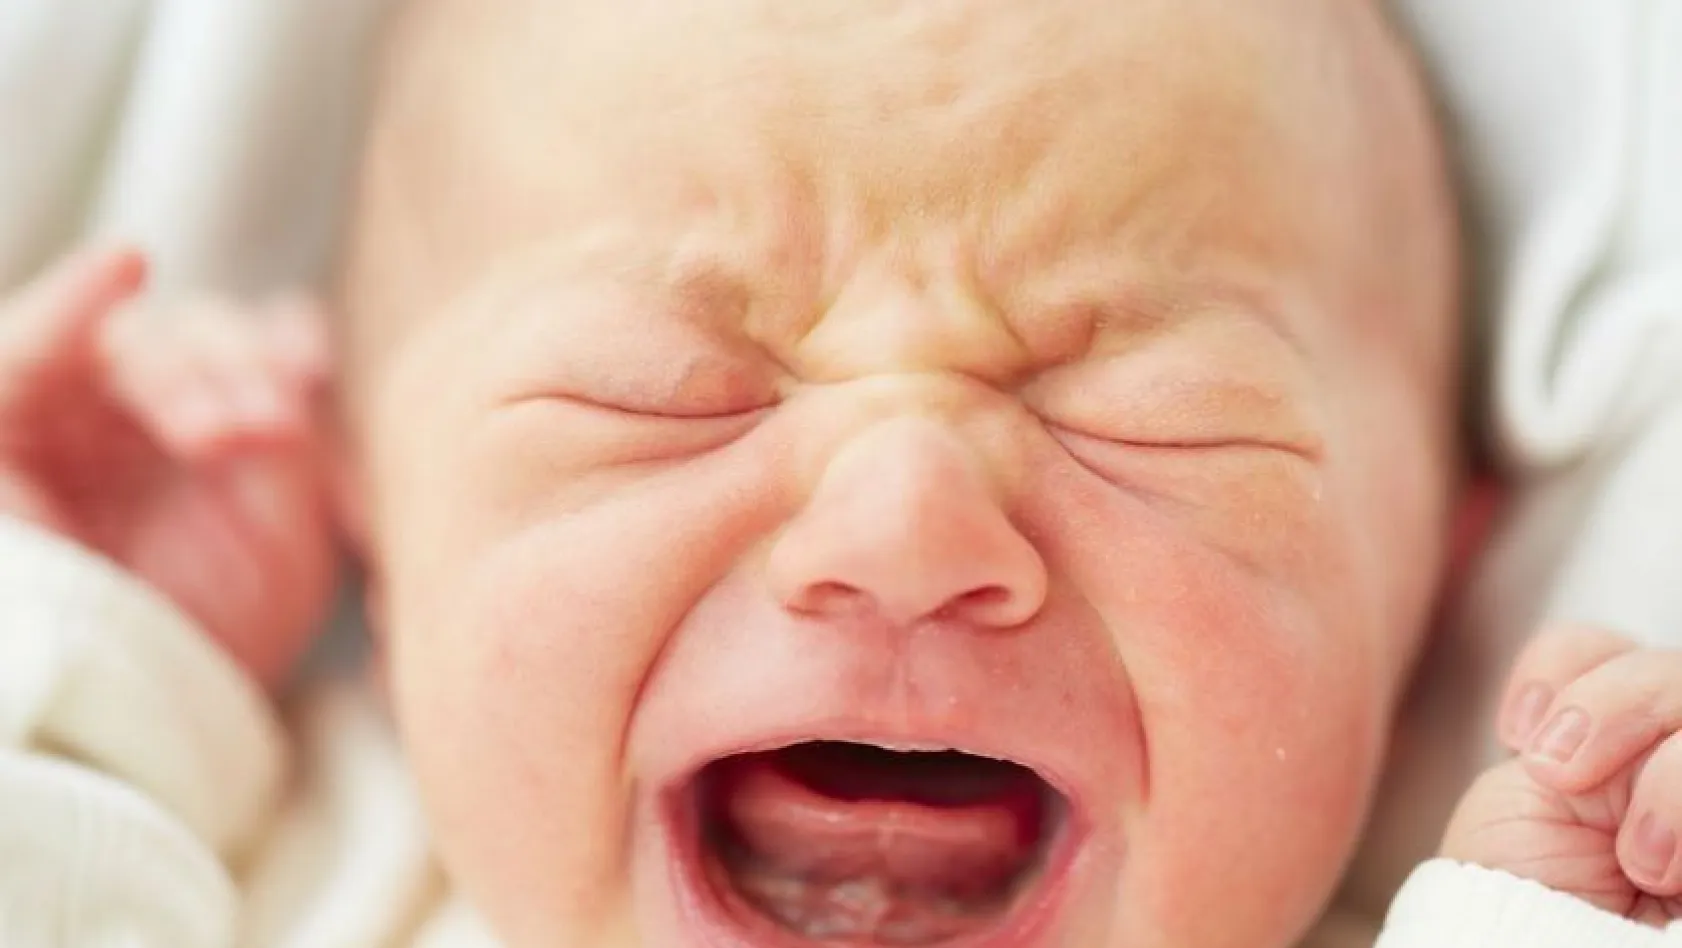 Riskli bebeklerde erken müdahale yaklaşımları
